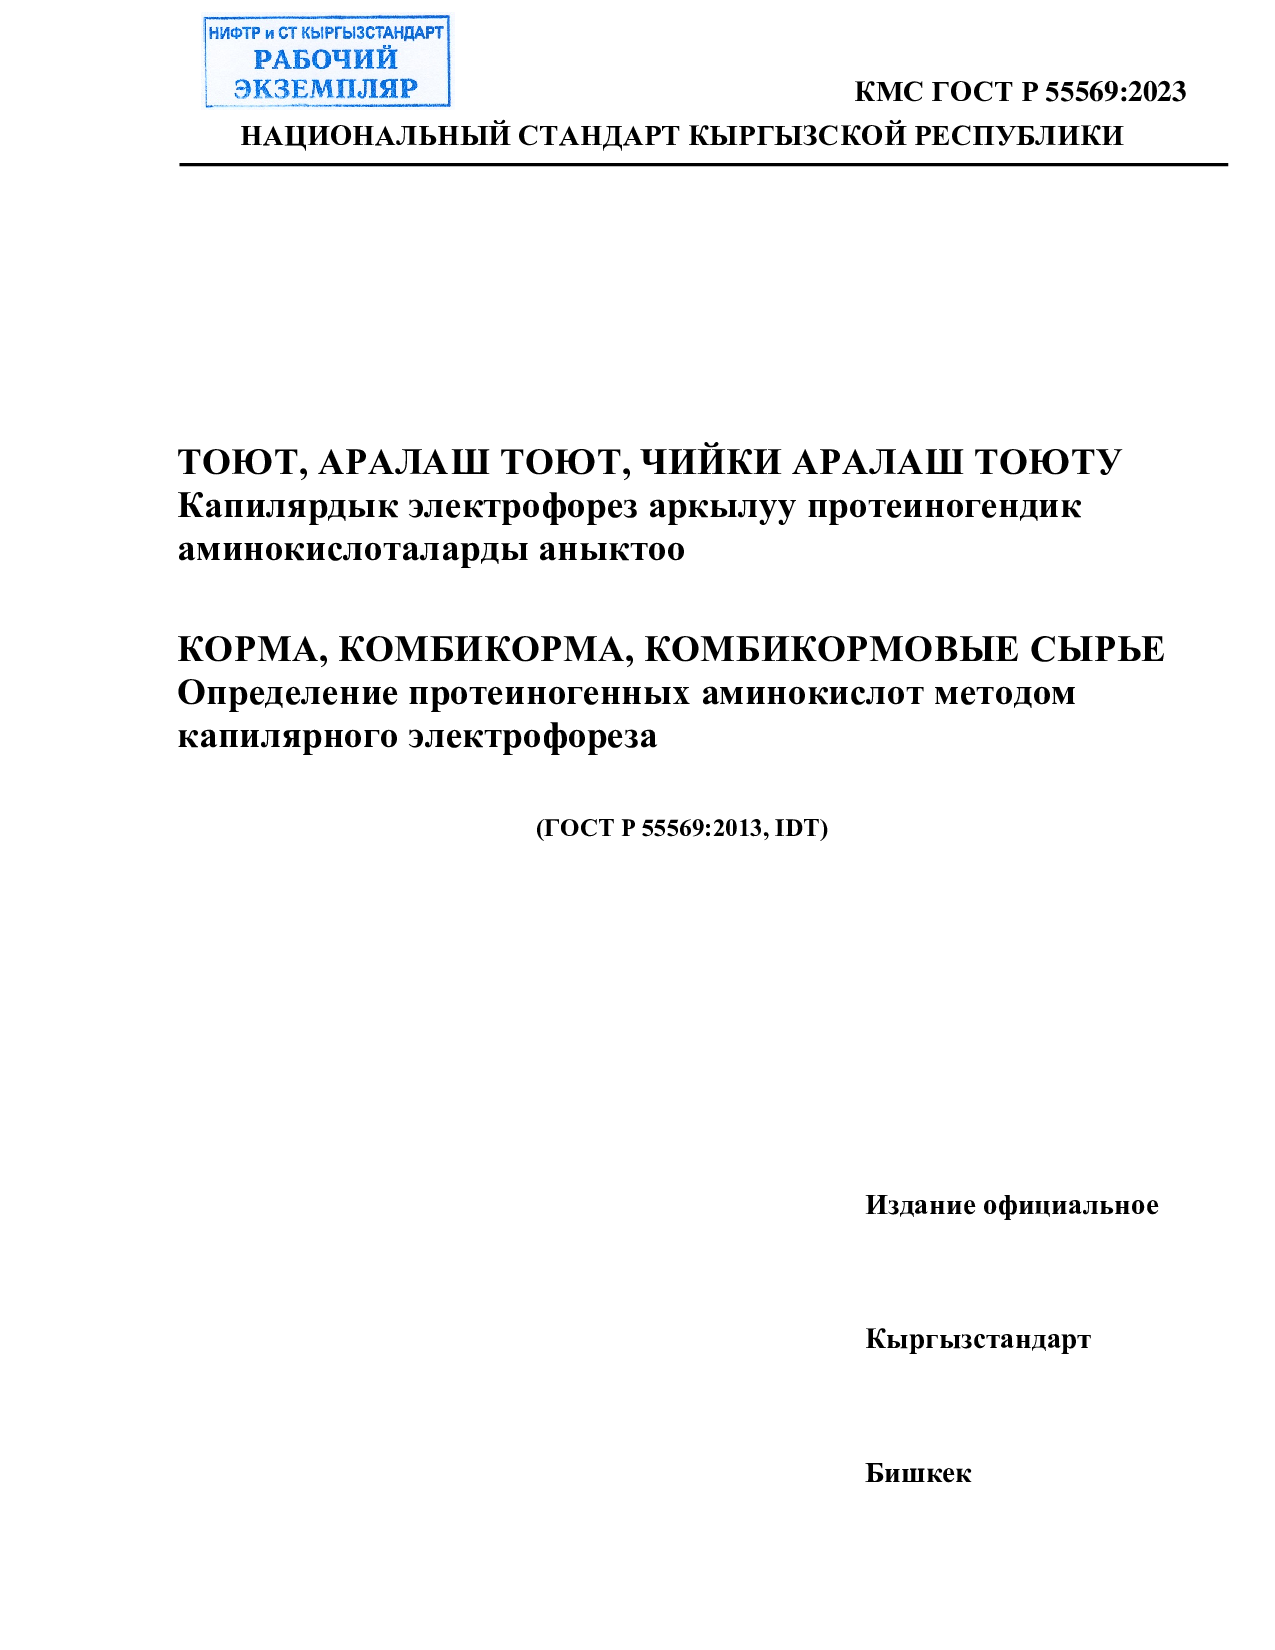 КОРМА, КОМБИКОРМА, КОМБИКОРМОВЫЕ СЫРЬЕ  Определение протеиногенных аминокислот методом  капилярного электрофореза      (ГОСТ Р 55569:2013, IDT)